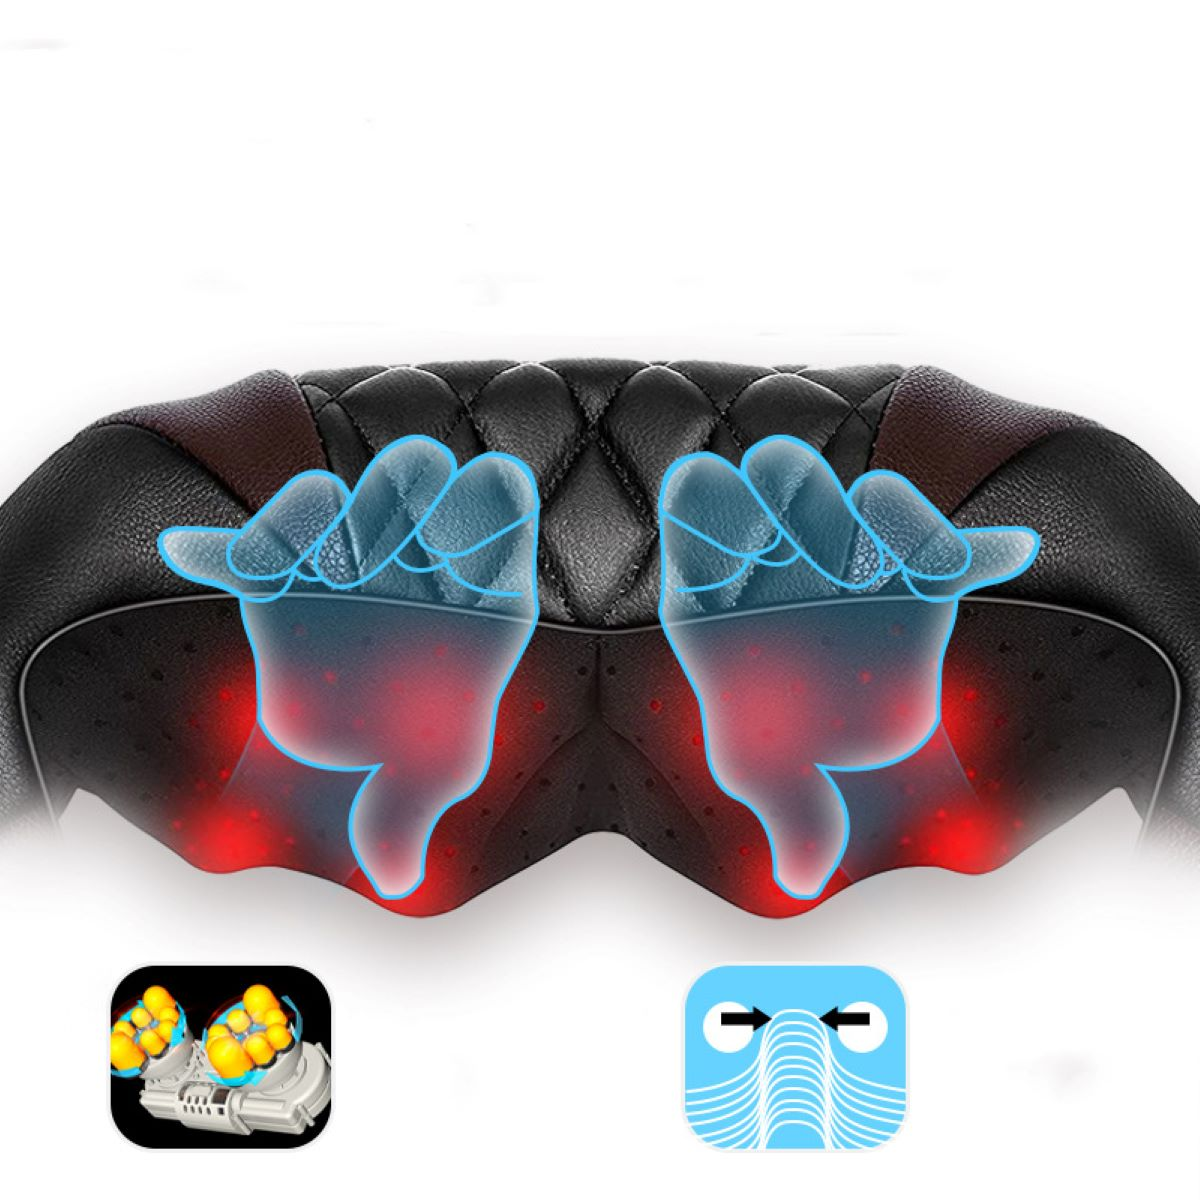 Massagegerät - Rückwärtskneten LACAMAX und analoges Massage-Schal 3D-Knetbewegung, Vorwärts- Schwarzer